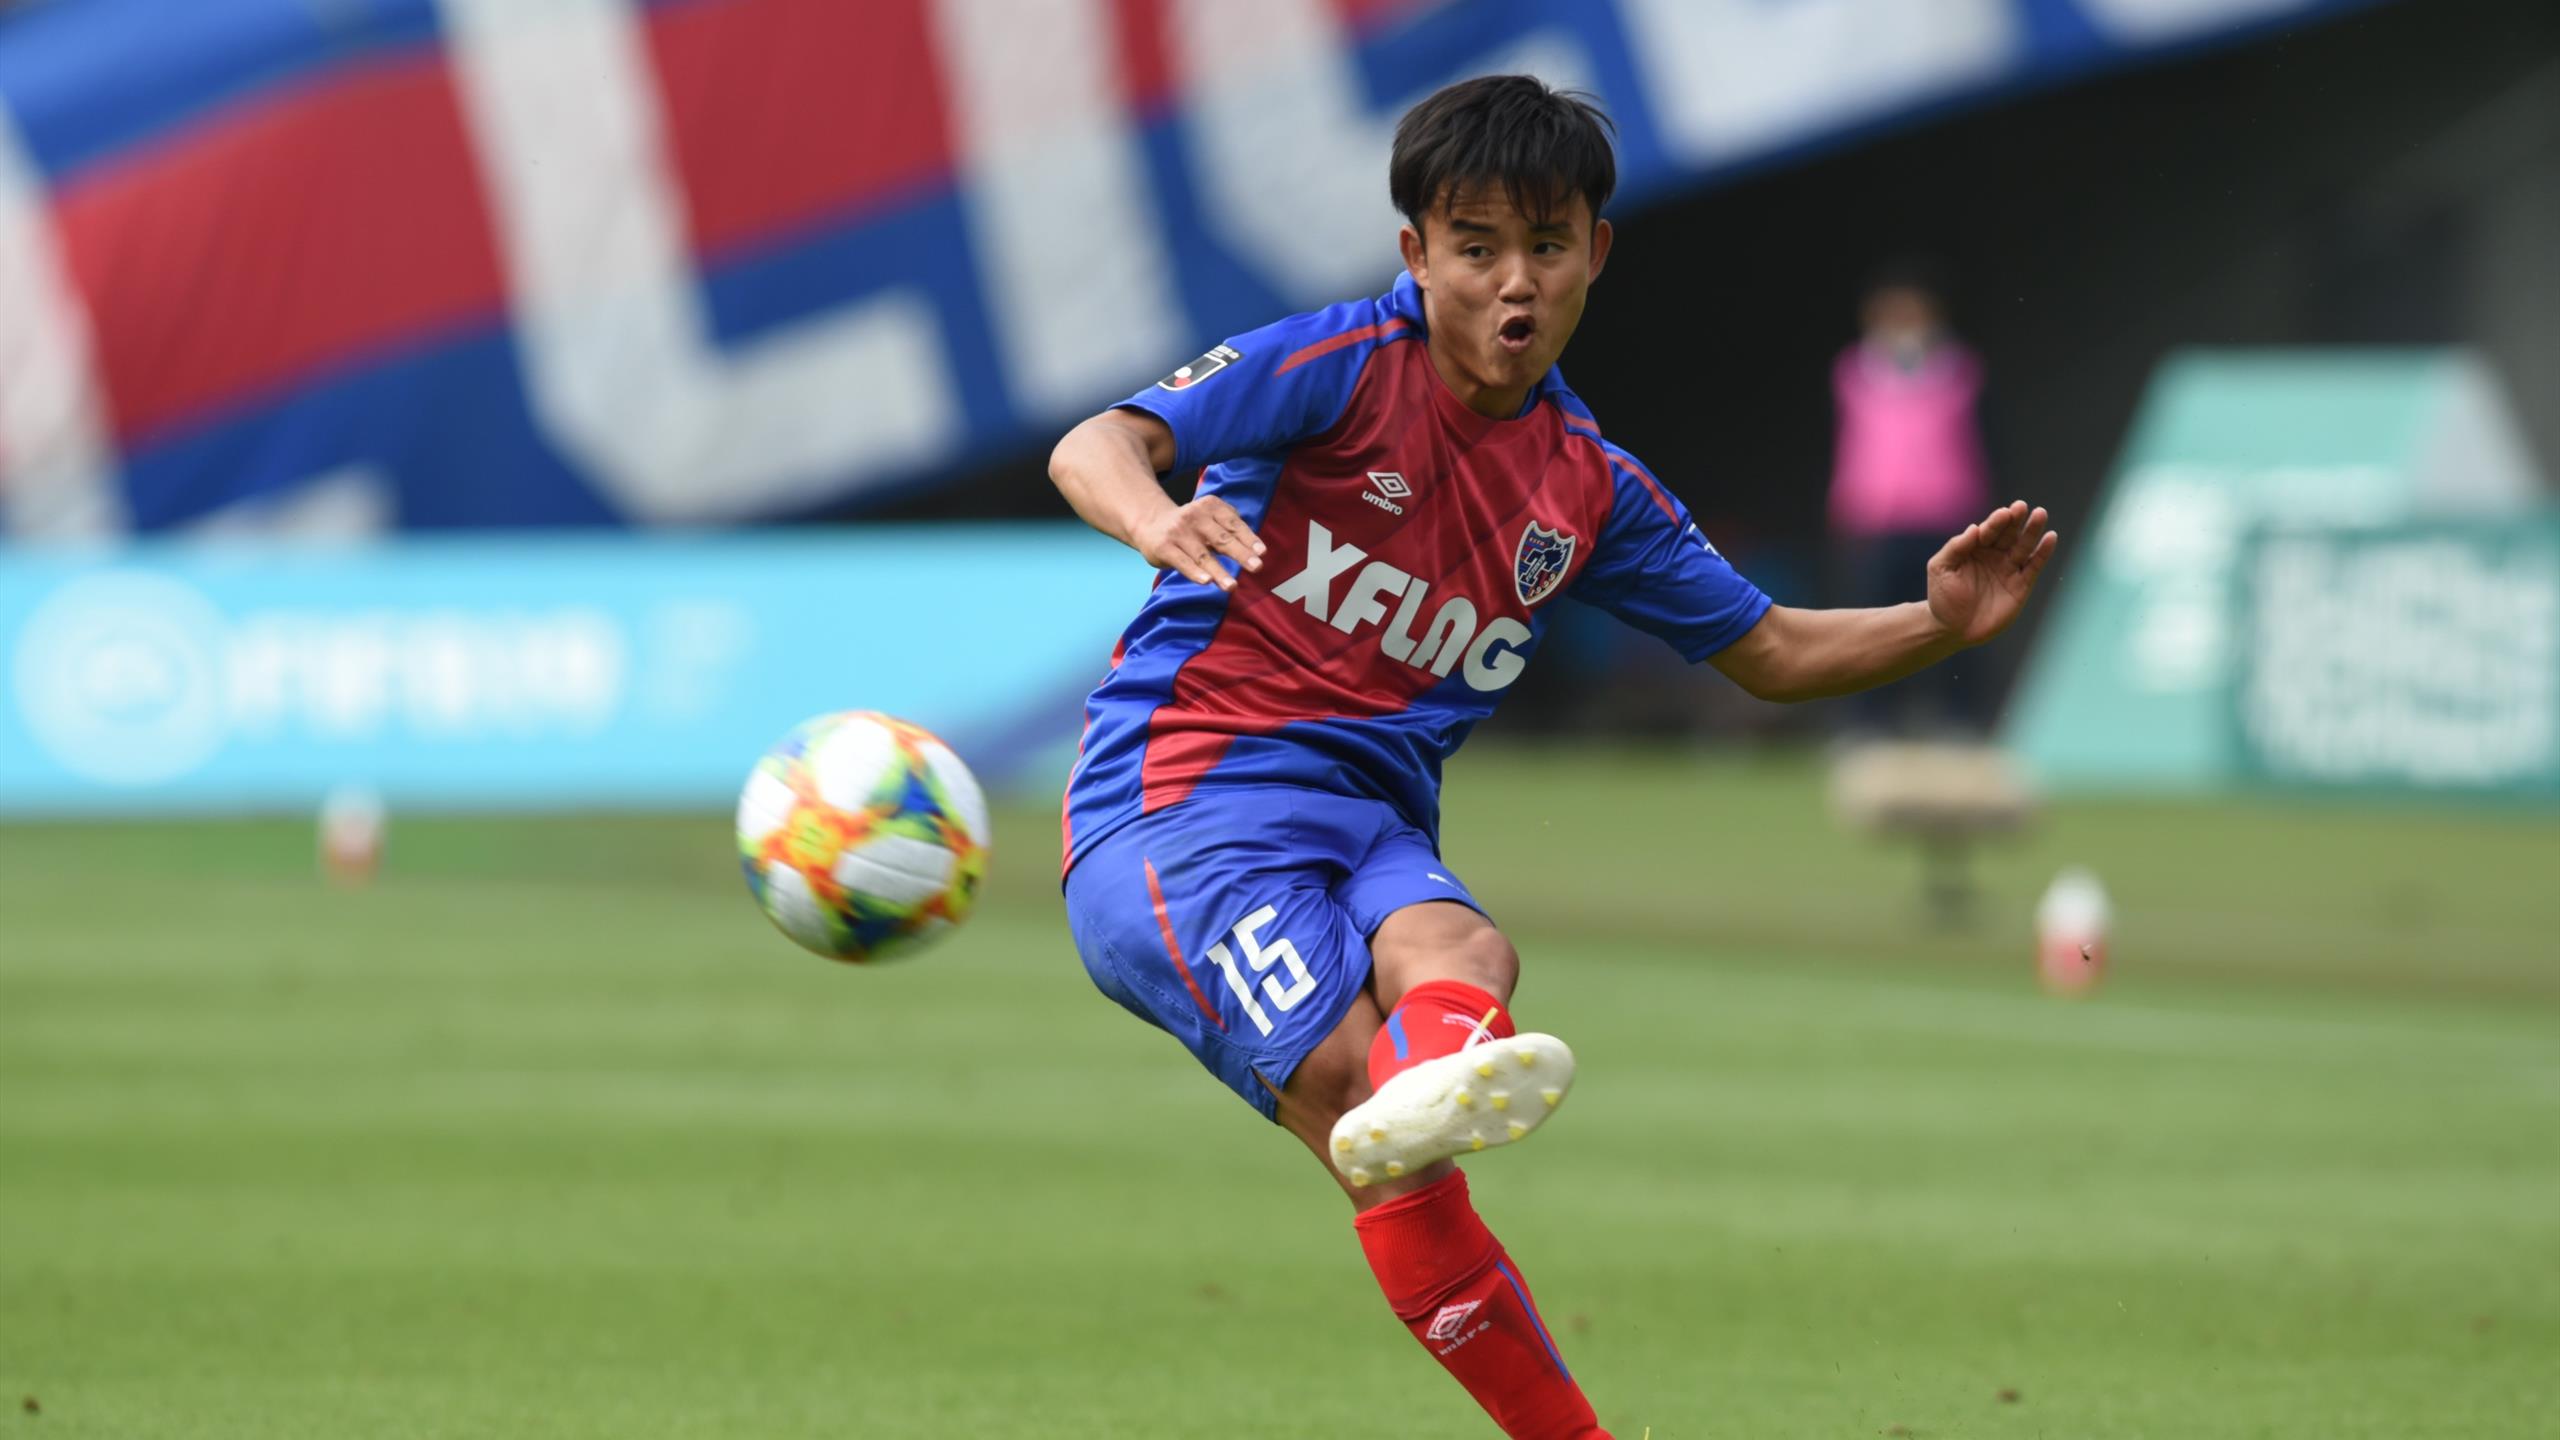 Футболист «Реала» забил за молодежную сборную Японии между ног четверым противникам (видео)